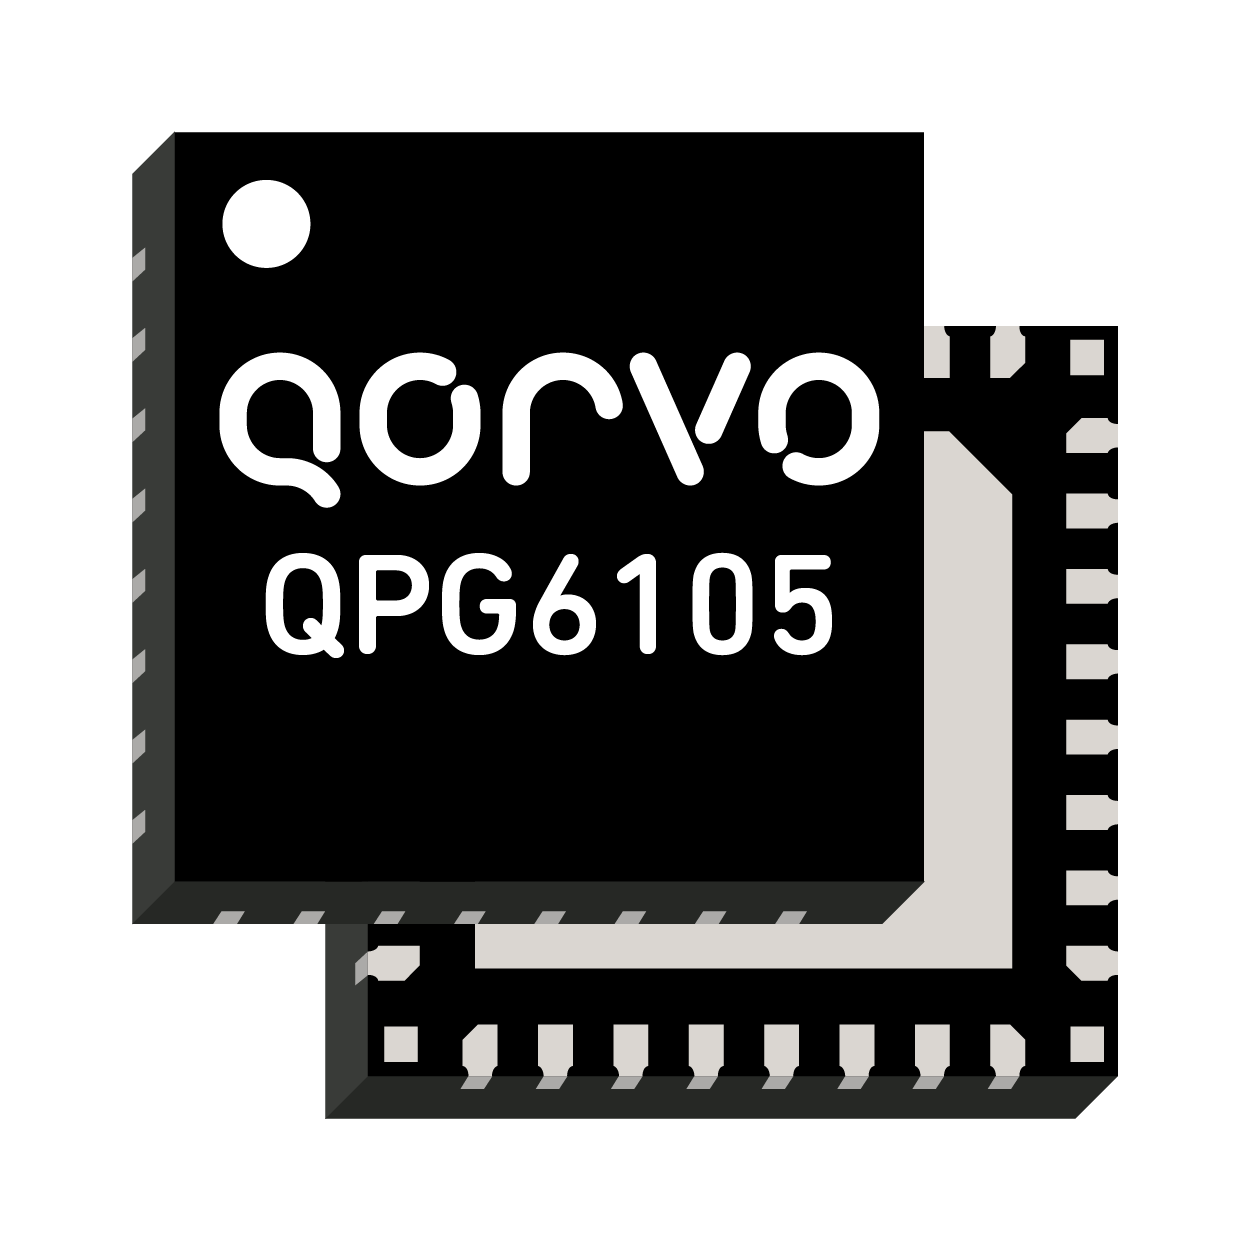 QPG6100 de Qorvo